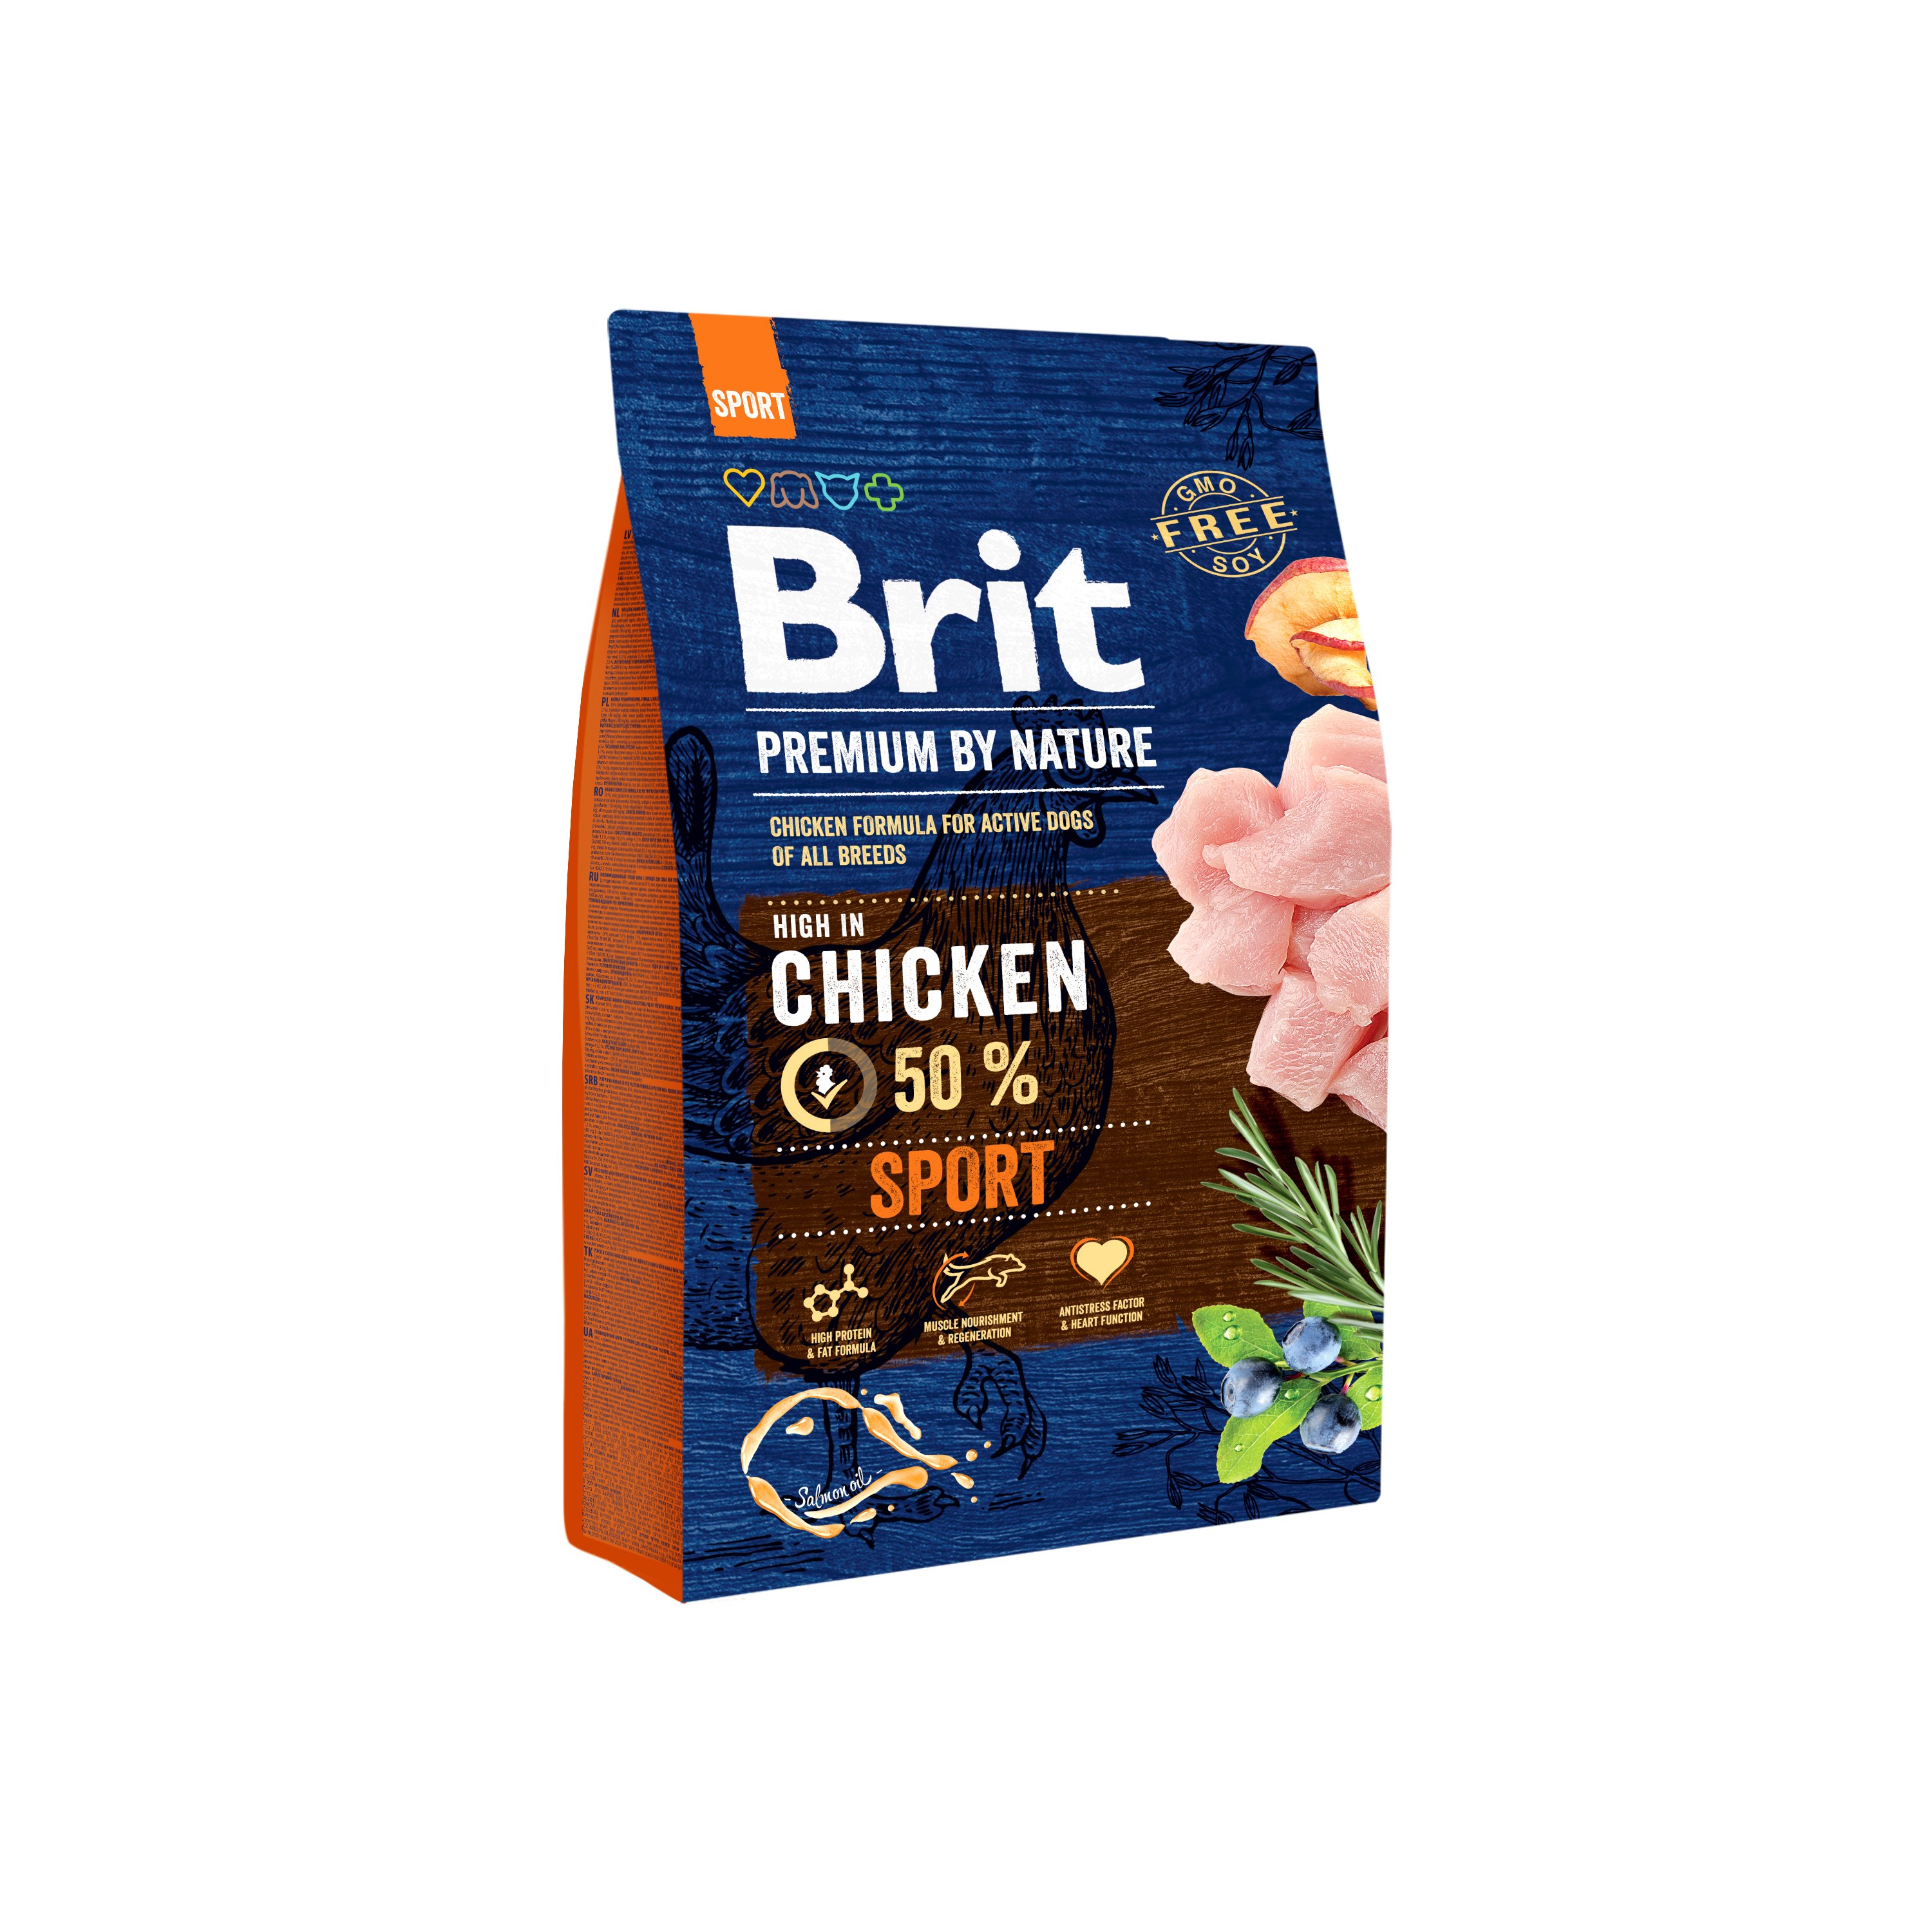 Сухой корм для собак с высокими физическими нагрузками Brit Premium Dog Sport, с курицей, 3 кг - фото 1